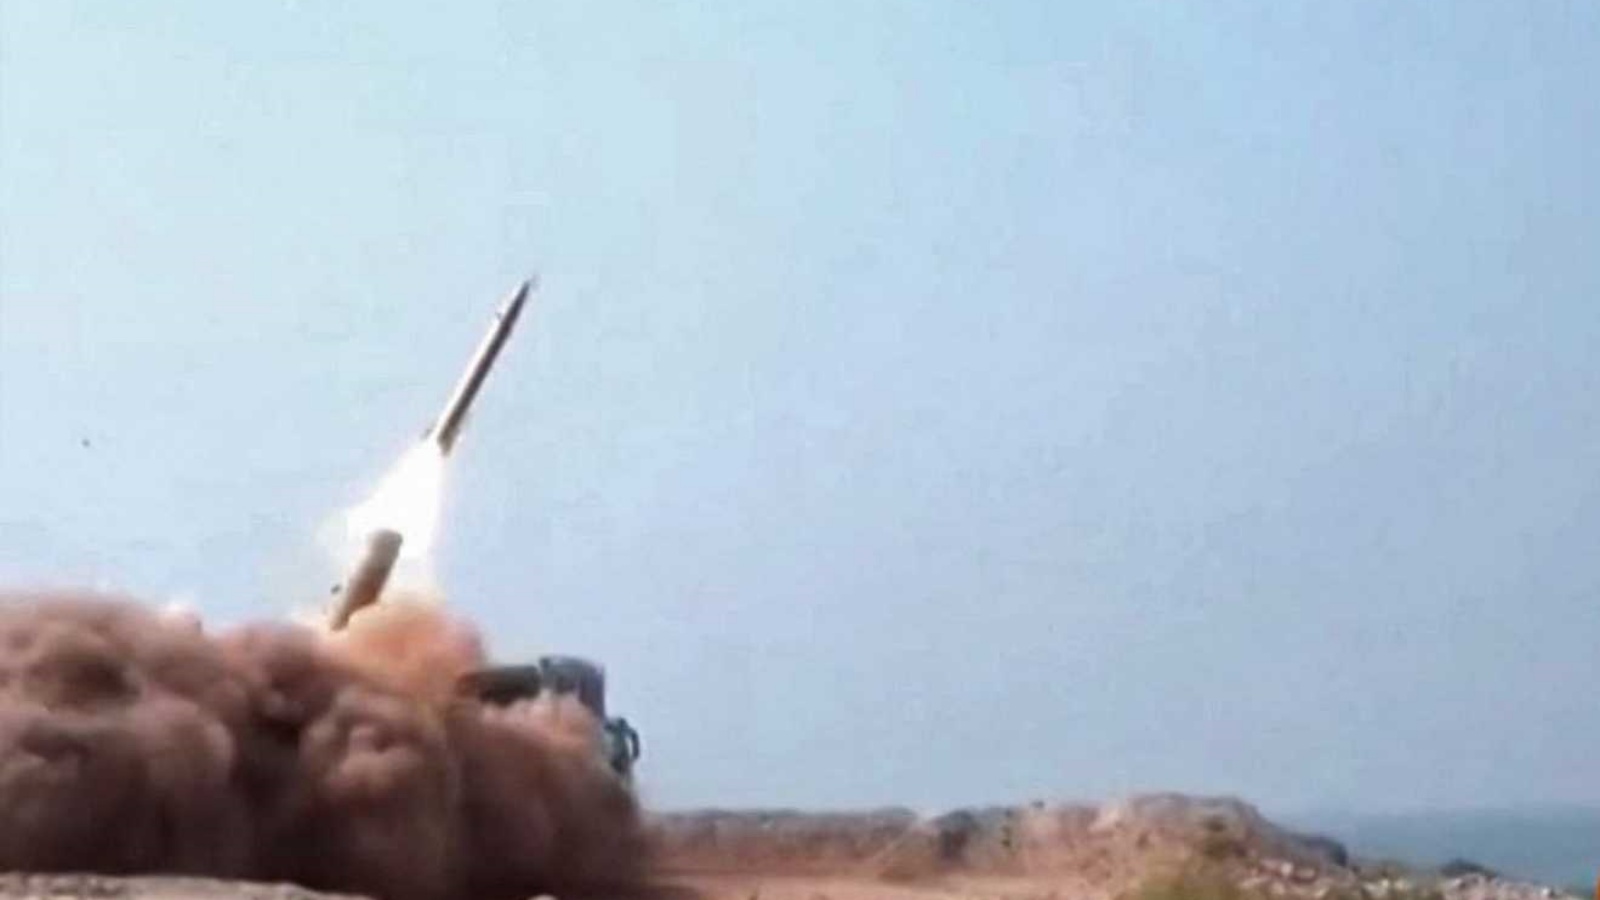 لحظة إطلاق الصاروخ الإيراني (من الوثائقي الخاص بالعملية الذي بثه التلفزيون الرسمي). الخميس 30 كانون الأول/ديسمبر 2021